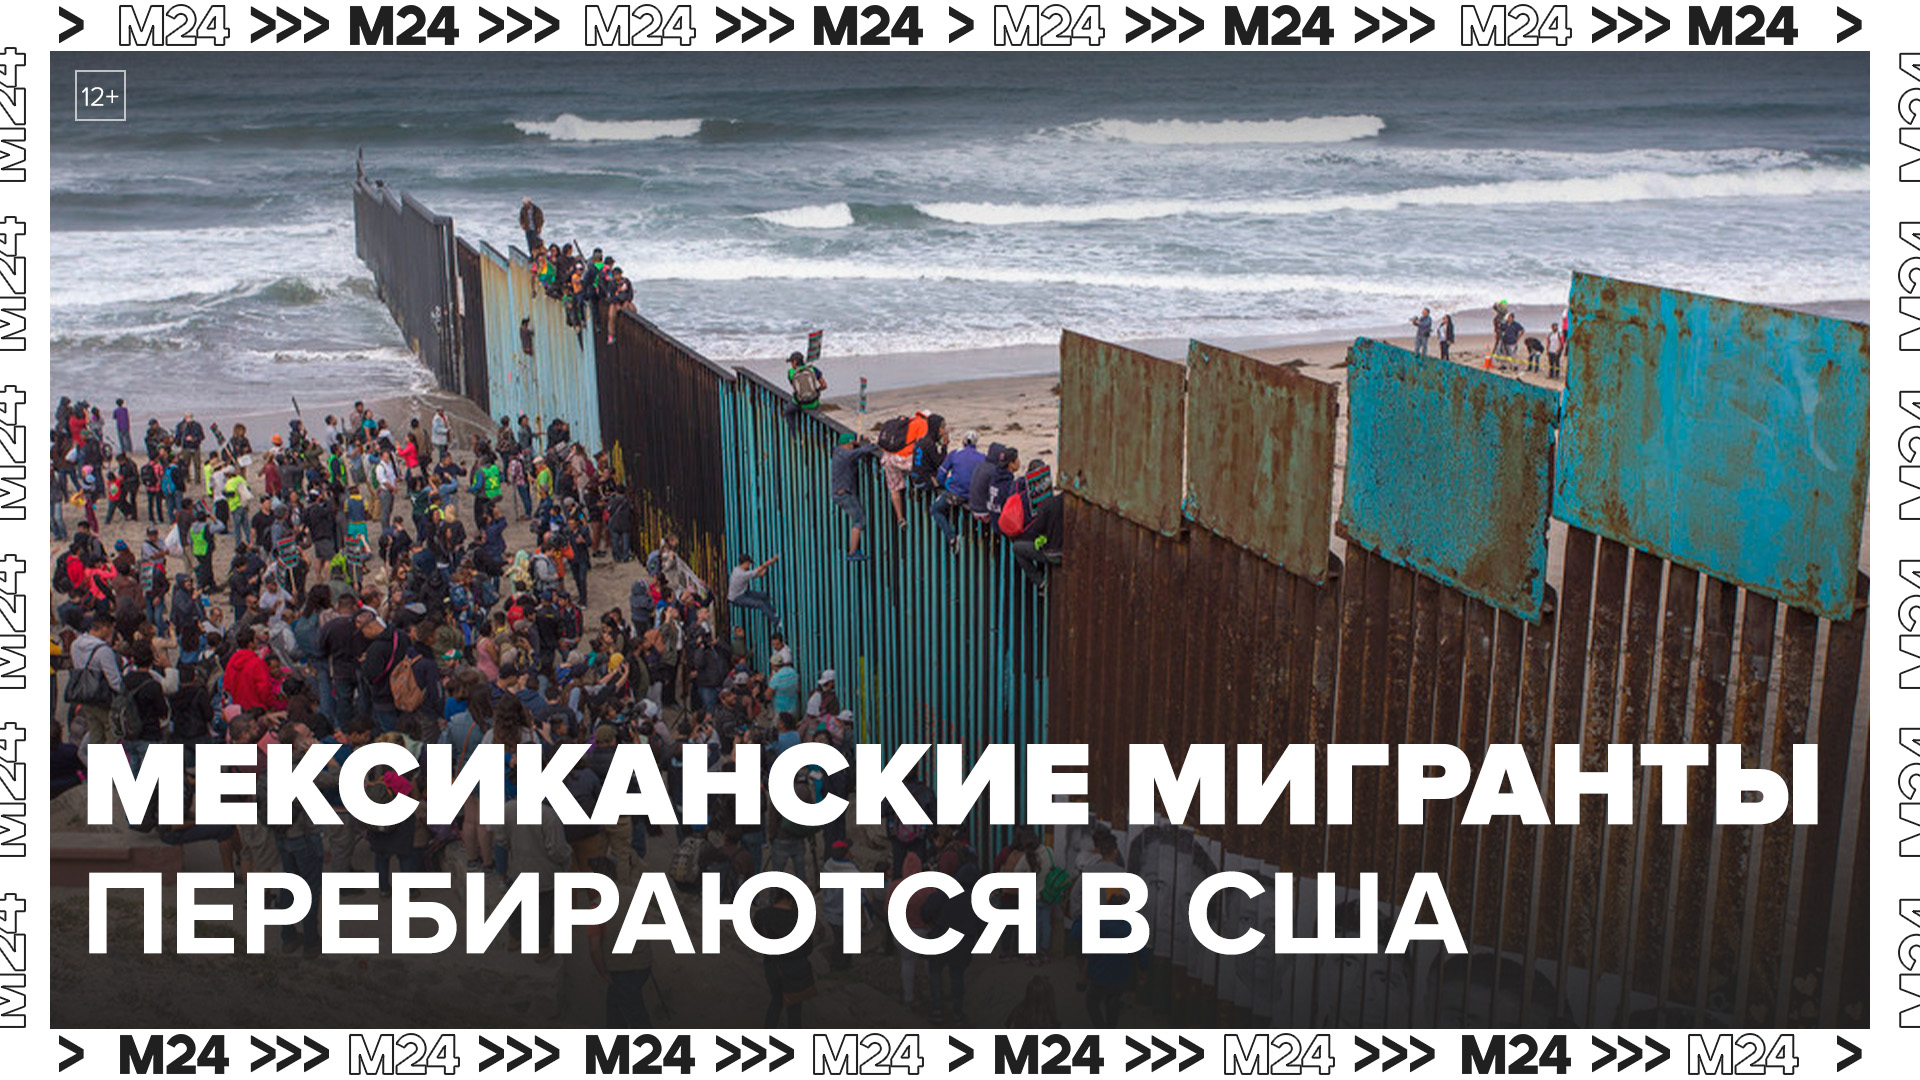 Новости мира: сотни нелегальных мигрантов попытались перебраться из Мексики в США - Москва 24